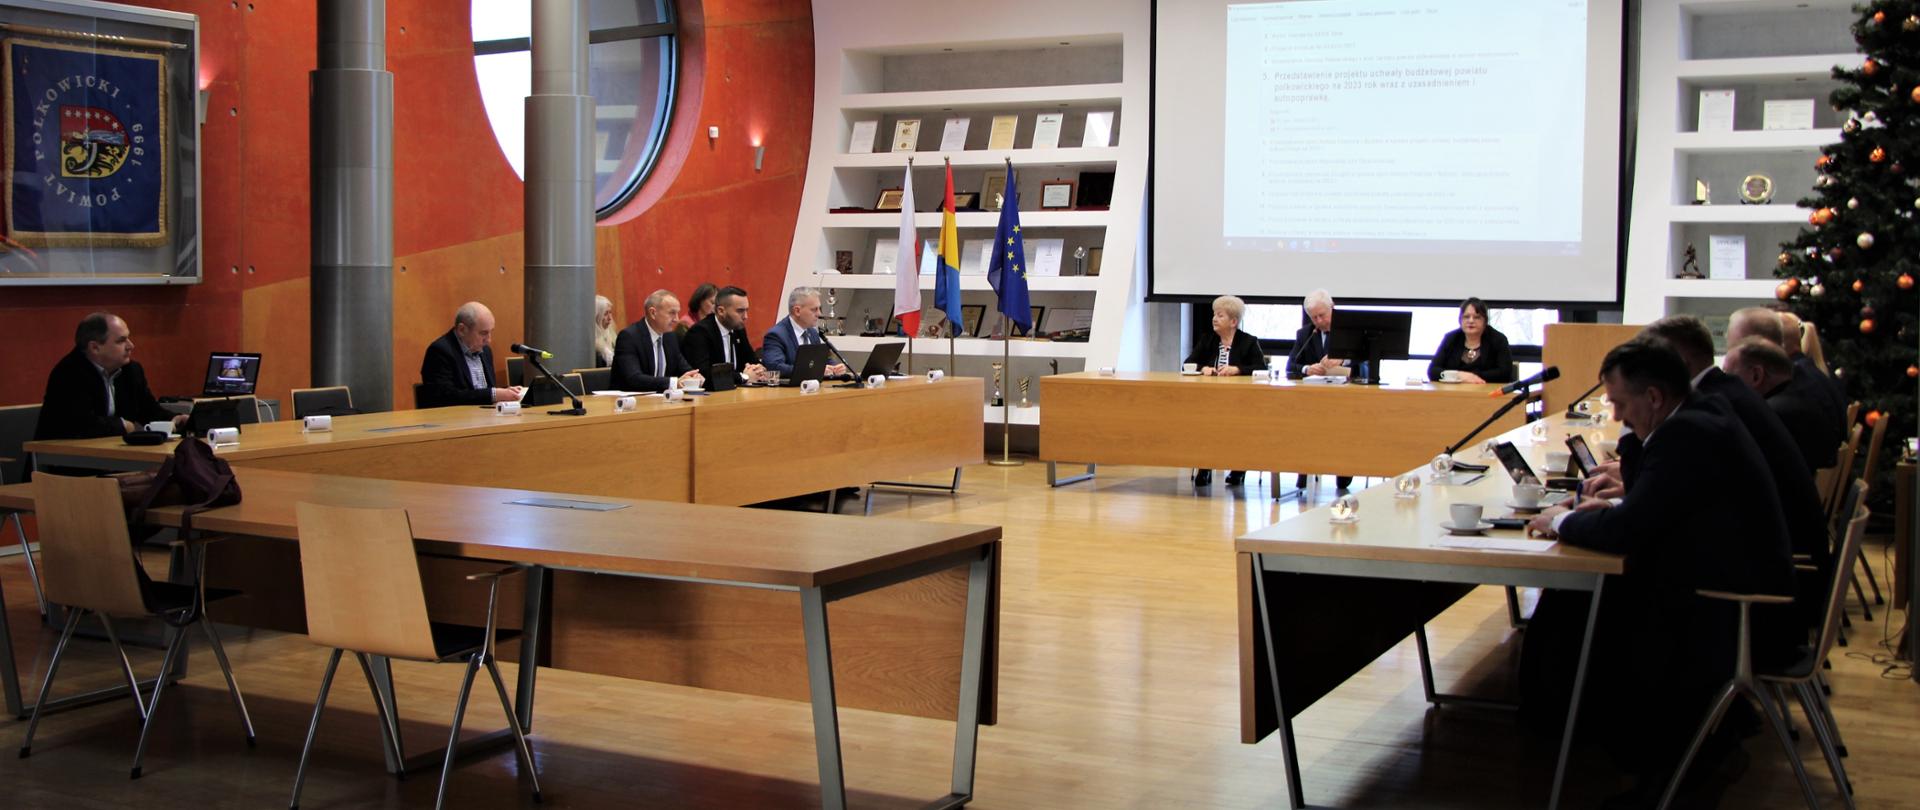 Radni Powiatu Polkowickiego obradują podczas sesji 